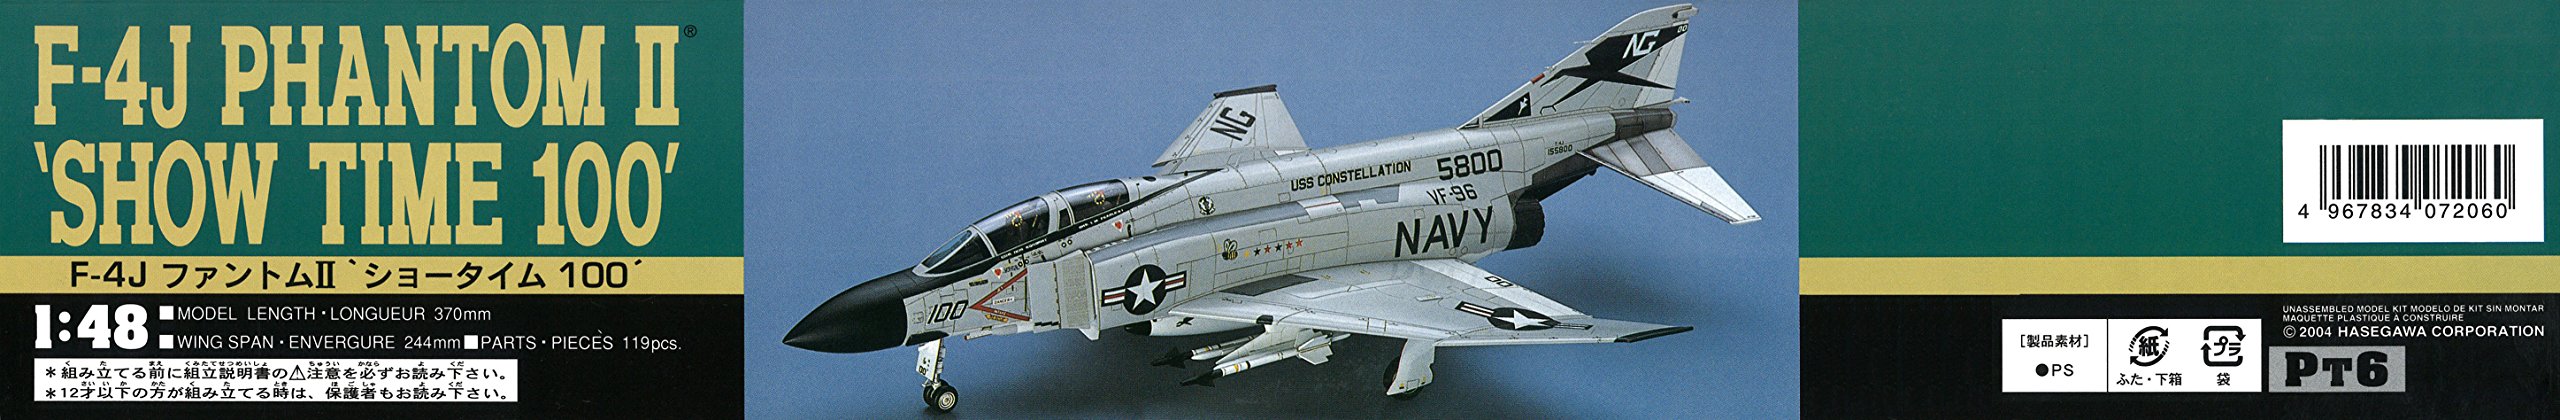 Hasegawa 1/48 US Navy F-4J Phantom II w/One Piece Canopy Model Kit HAPT06 NEW_4